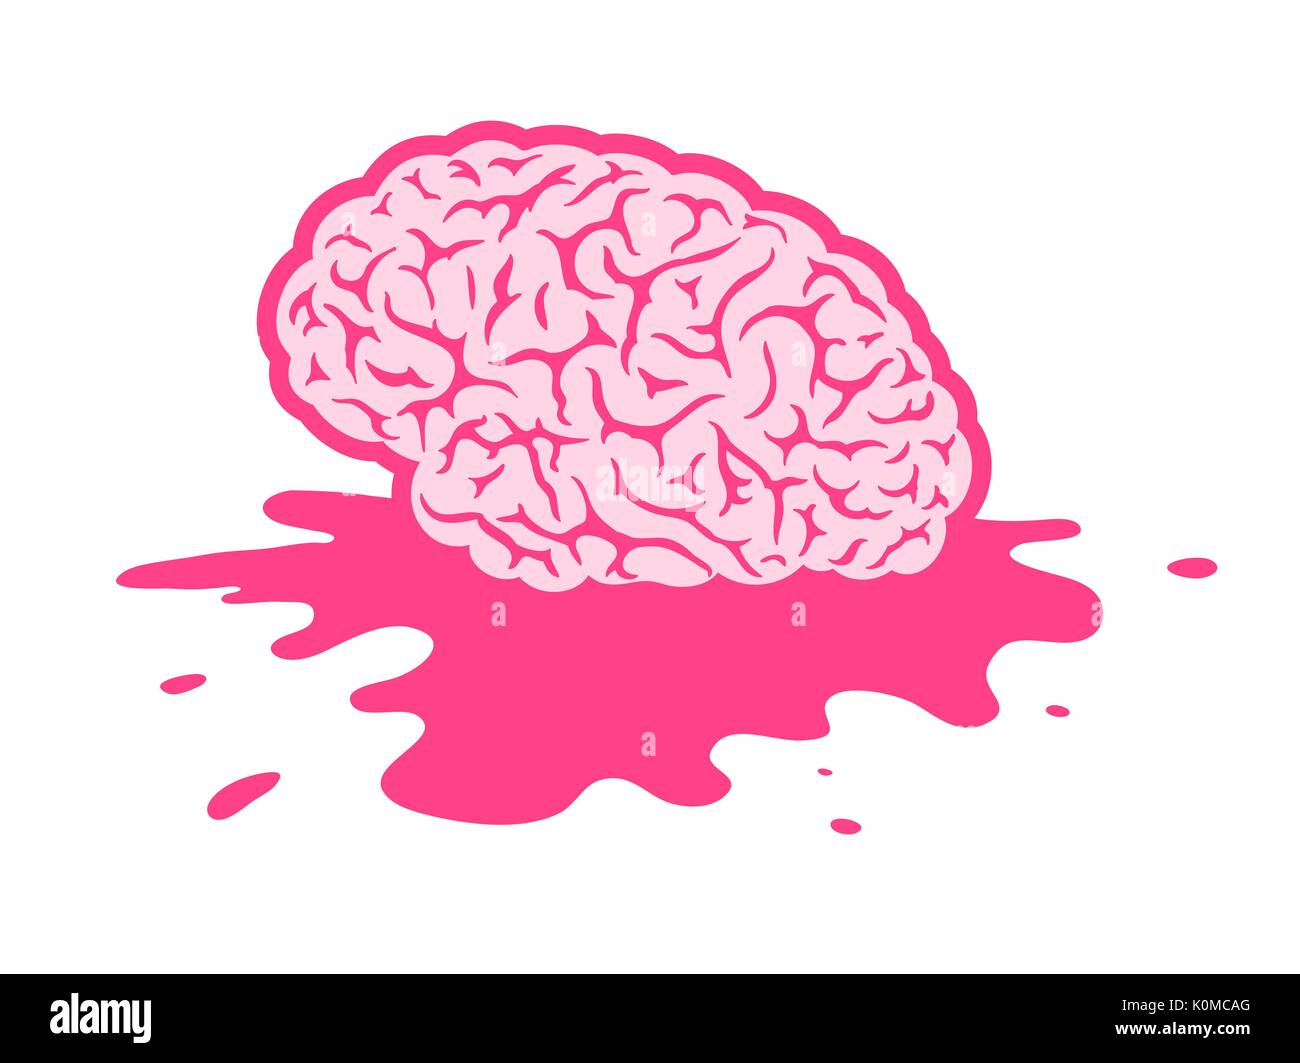 Splattered fallen brain in puddle illustration Stock Vector